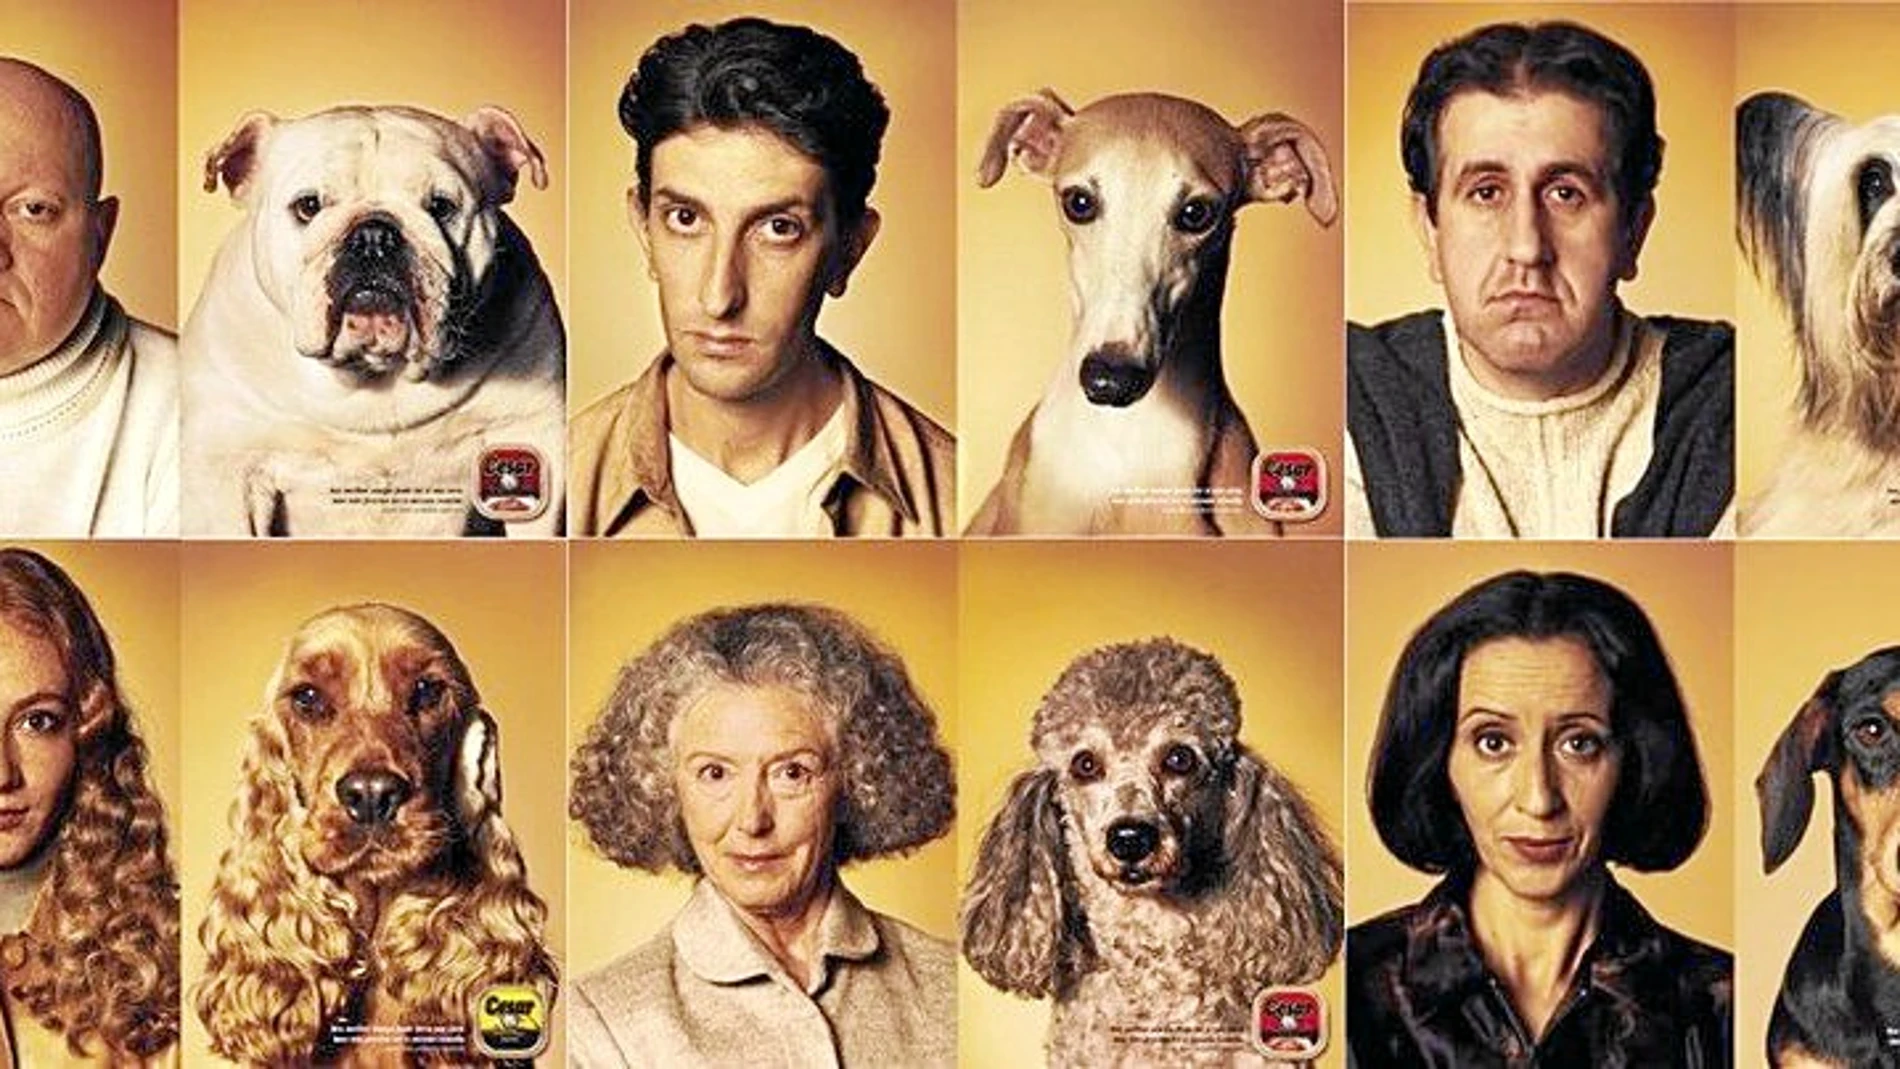 Divertida imagen de una campaña publicitaria en la que se buscó un asombroso parecido entre los perros y los modelos del anuncio